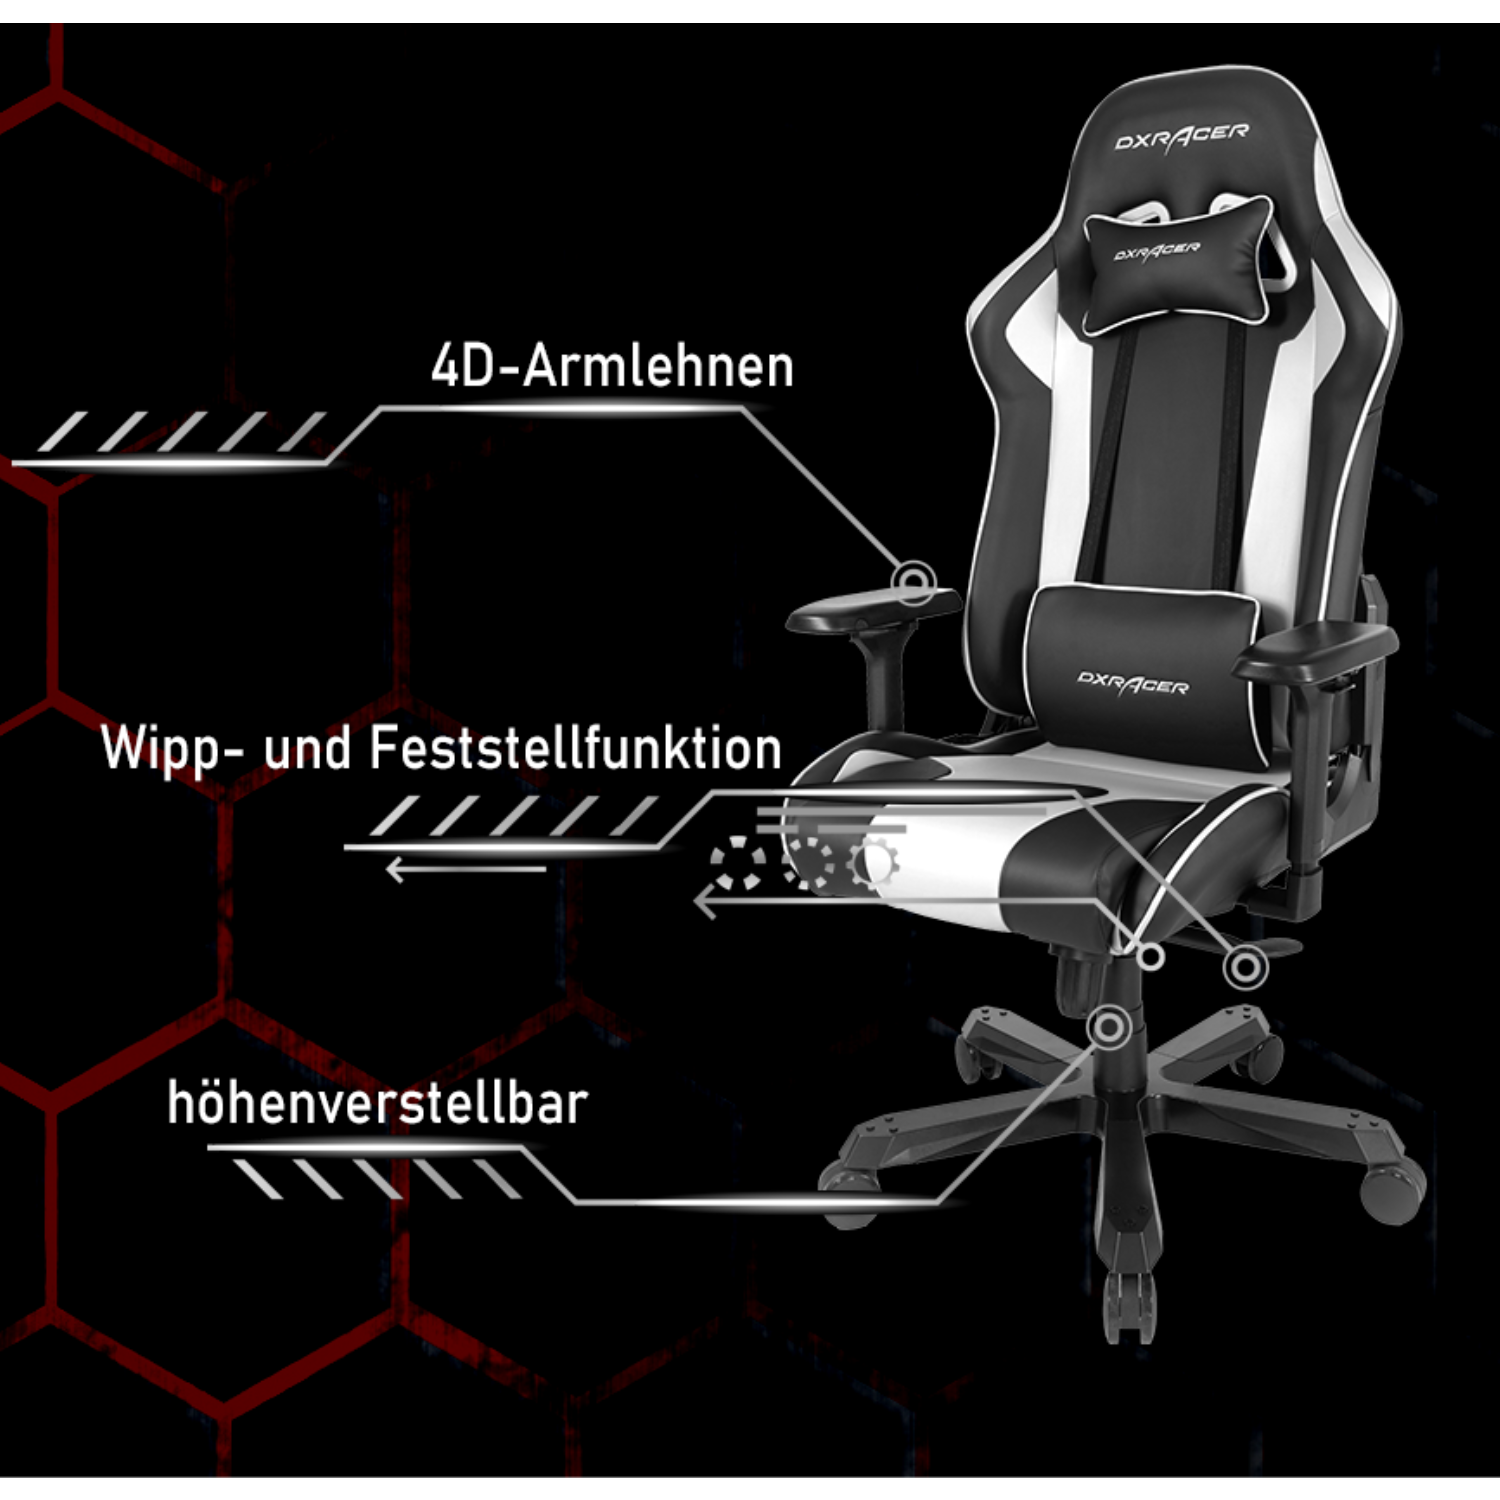 K-Series Schwarz Chair, Gaming DXRACER